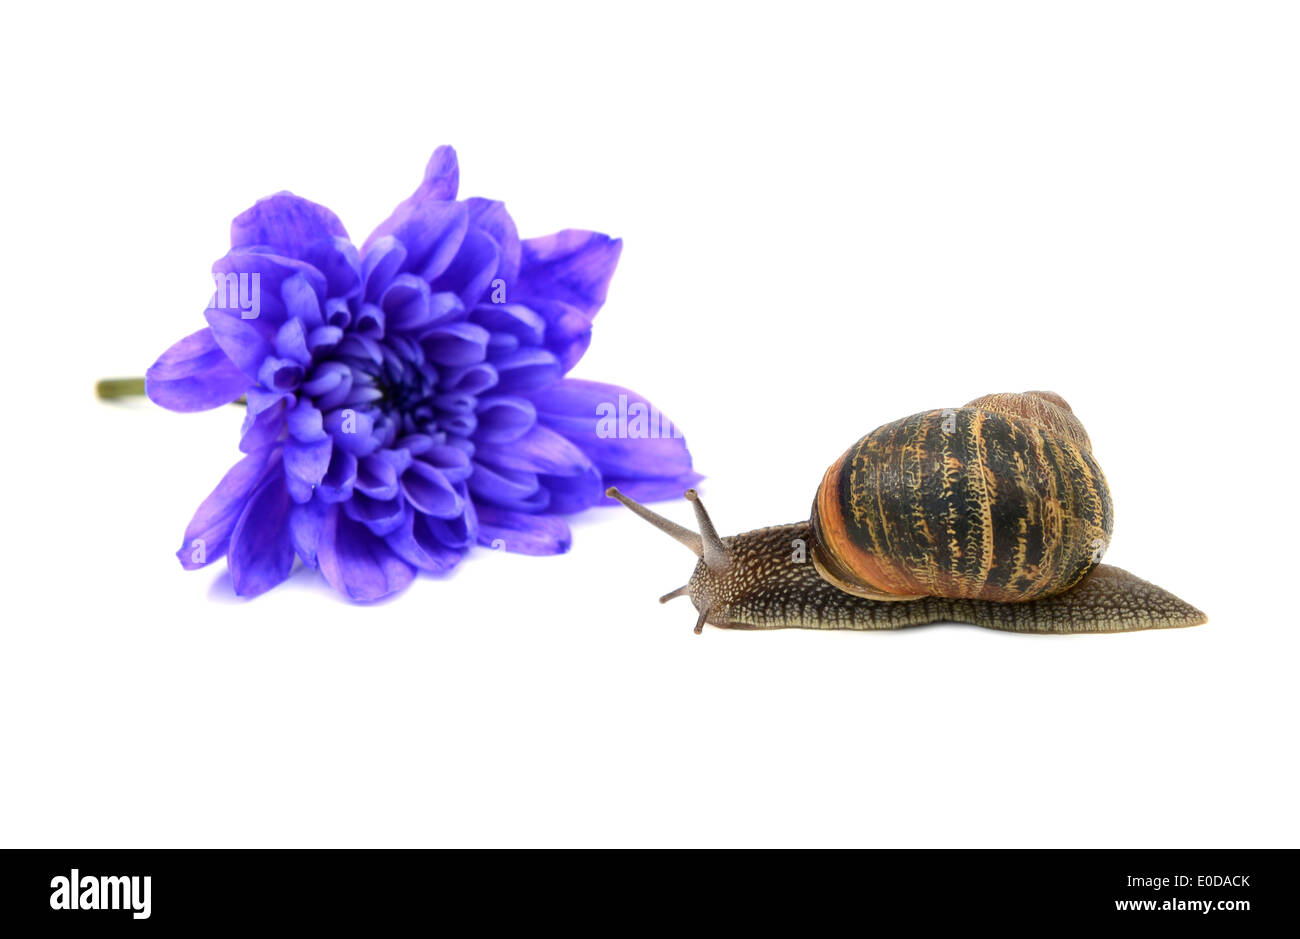 Primer plano de un caracol con rayas creemos shell en frente de una flor de crisantemo azul, aislado en un fondo blanco. Foto de stock